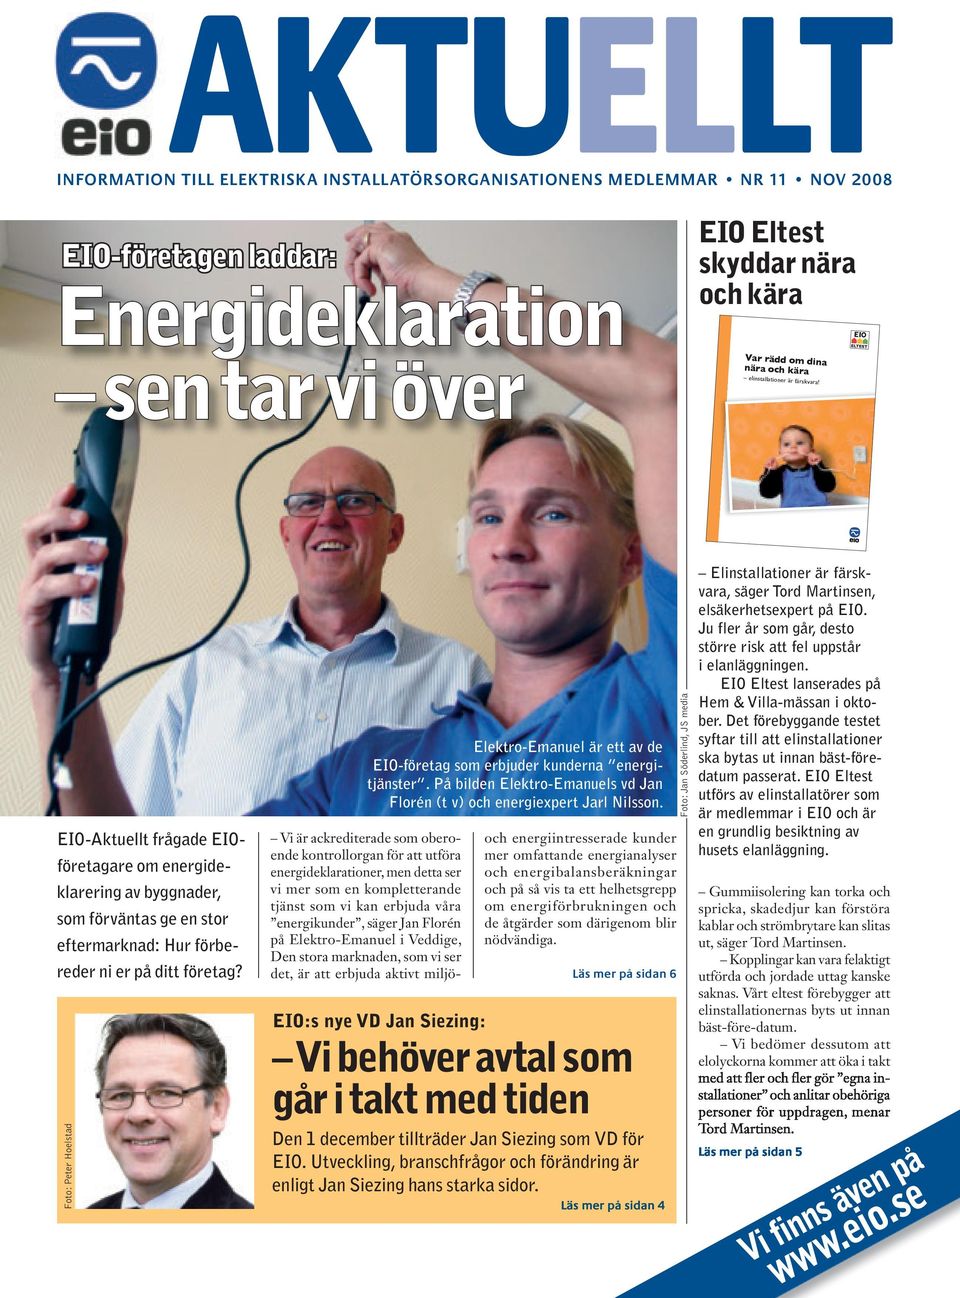 Foto: Peter Hoelstad Elektro-Emanuel är ett av de EIO-företag som erbjuder kunderna energitjänster. På bilden Elektro-Emanuels vd Jan Florén (t v) och energiexpert Jarl Nilsson.